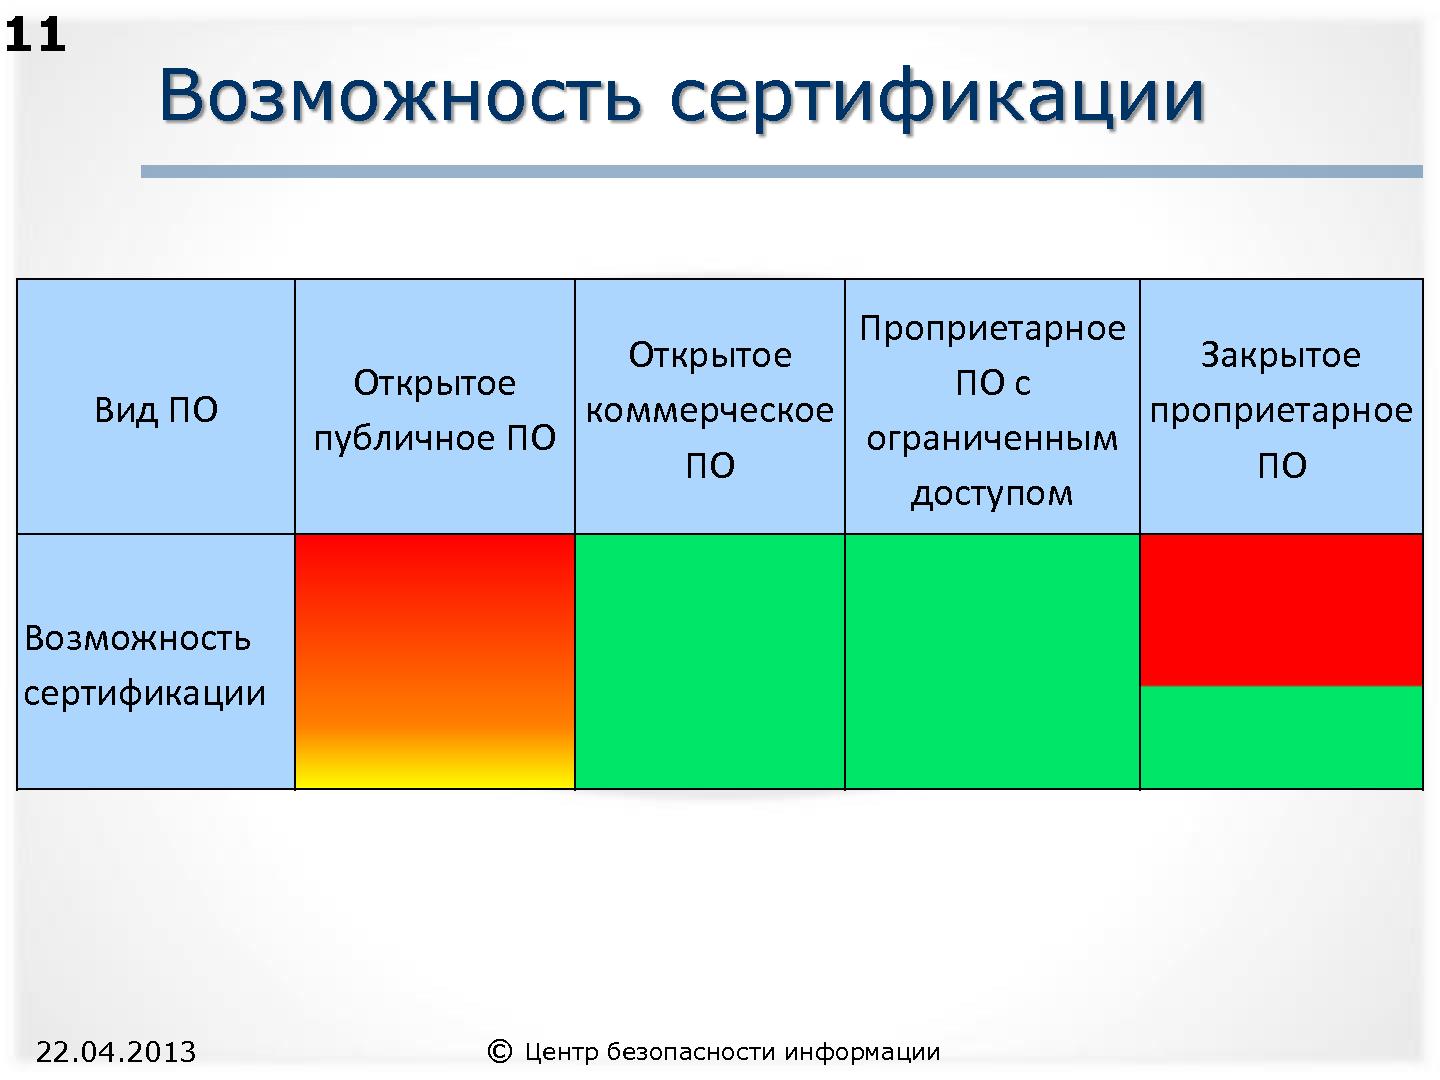 Файл:СПО и доверие к безопасности информационных систем (Александр Трубачев, ROSS-2013).pdf